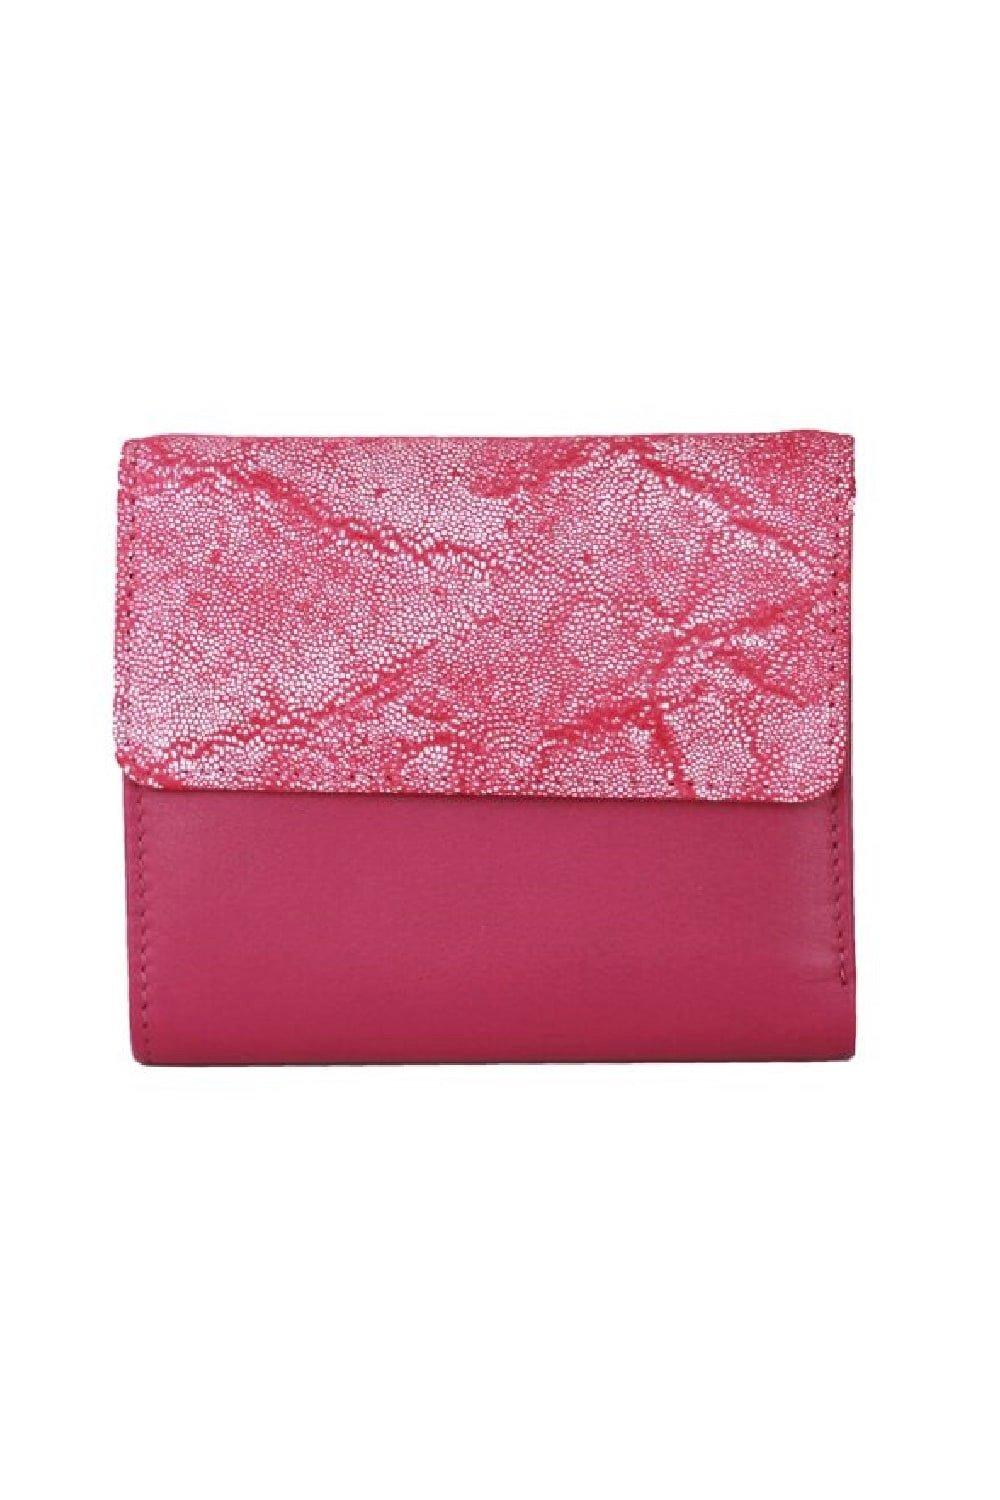 Кошелек с тиснением фольгой Eastern Counties Leather, розовый кошелек для монет бетси eastern counties leather красный